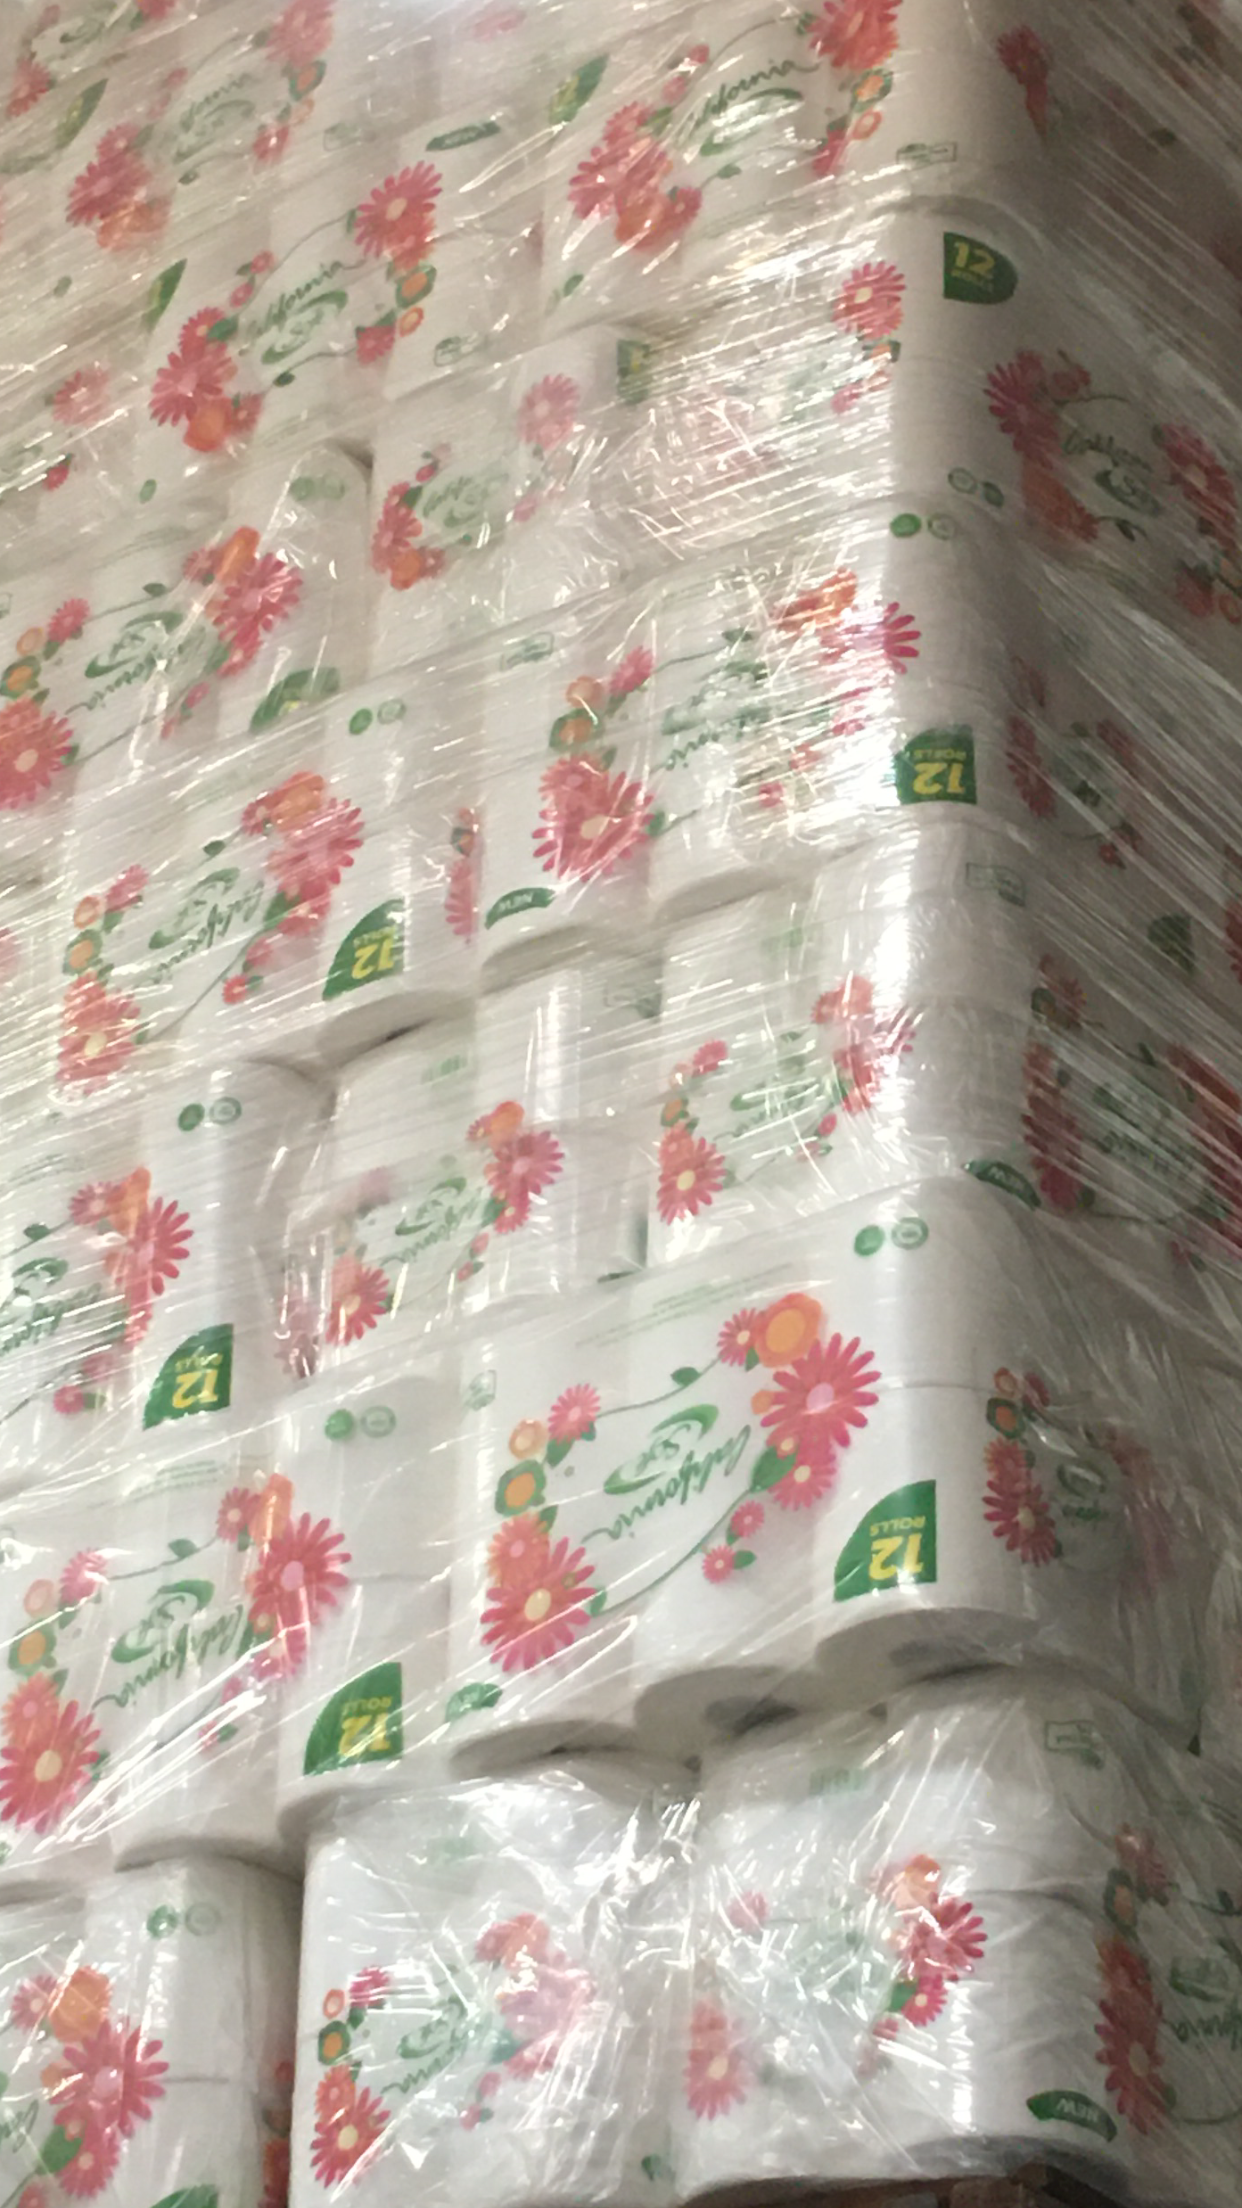 CALI SOFT Toilet Paper 廁纸 (48 ROLLS)